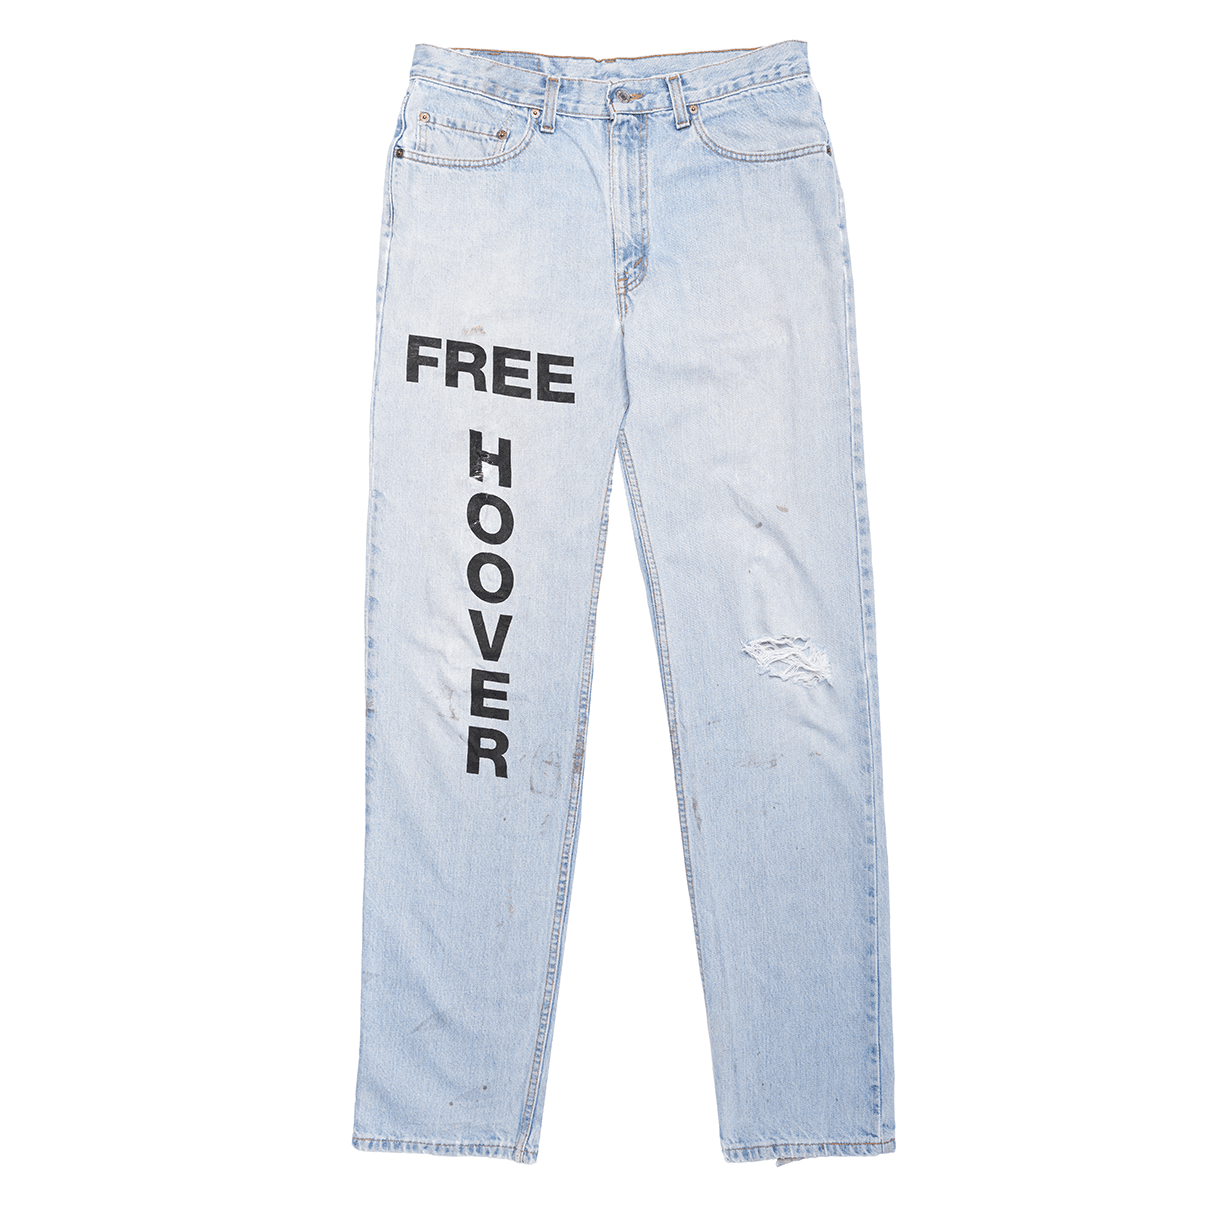 Kanye West Larry Hoover Jeans